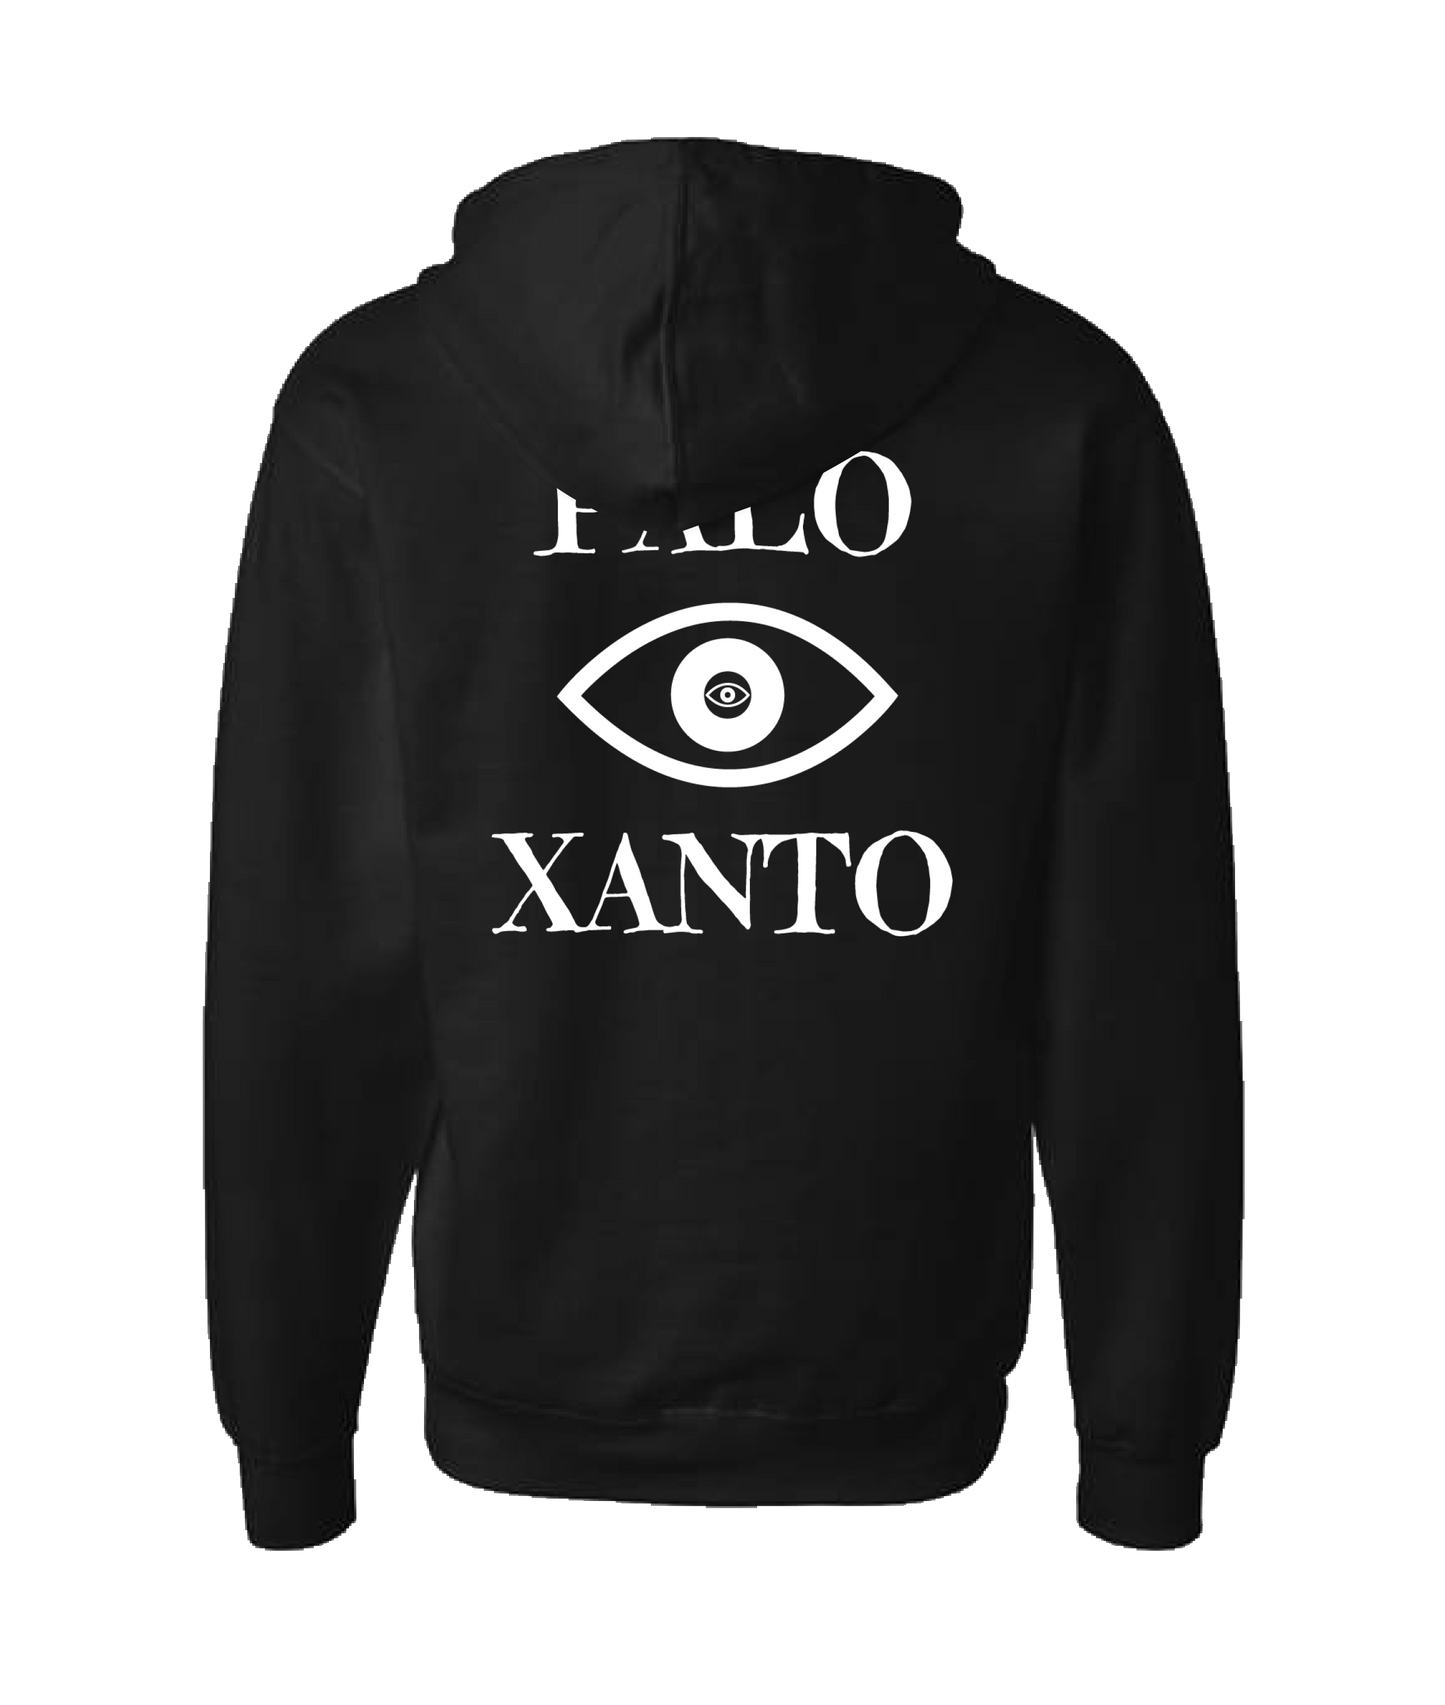 Palo Xanto - Eye - Black Zip Up Hoodie